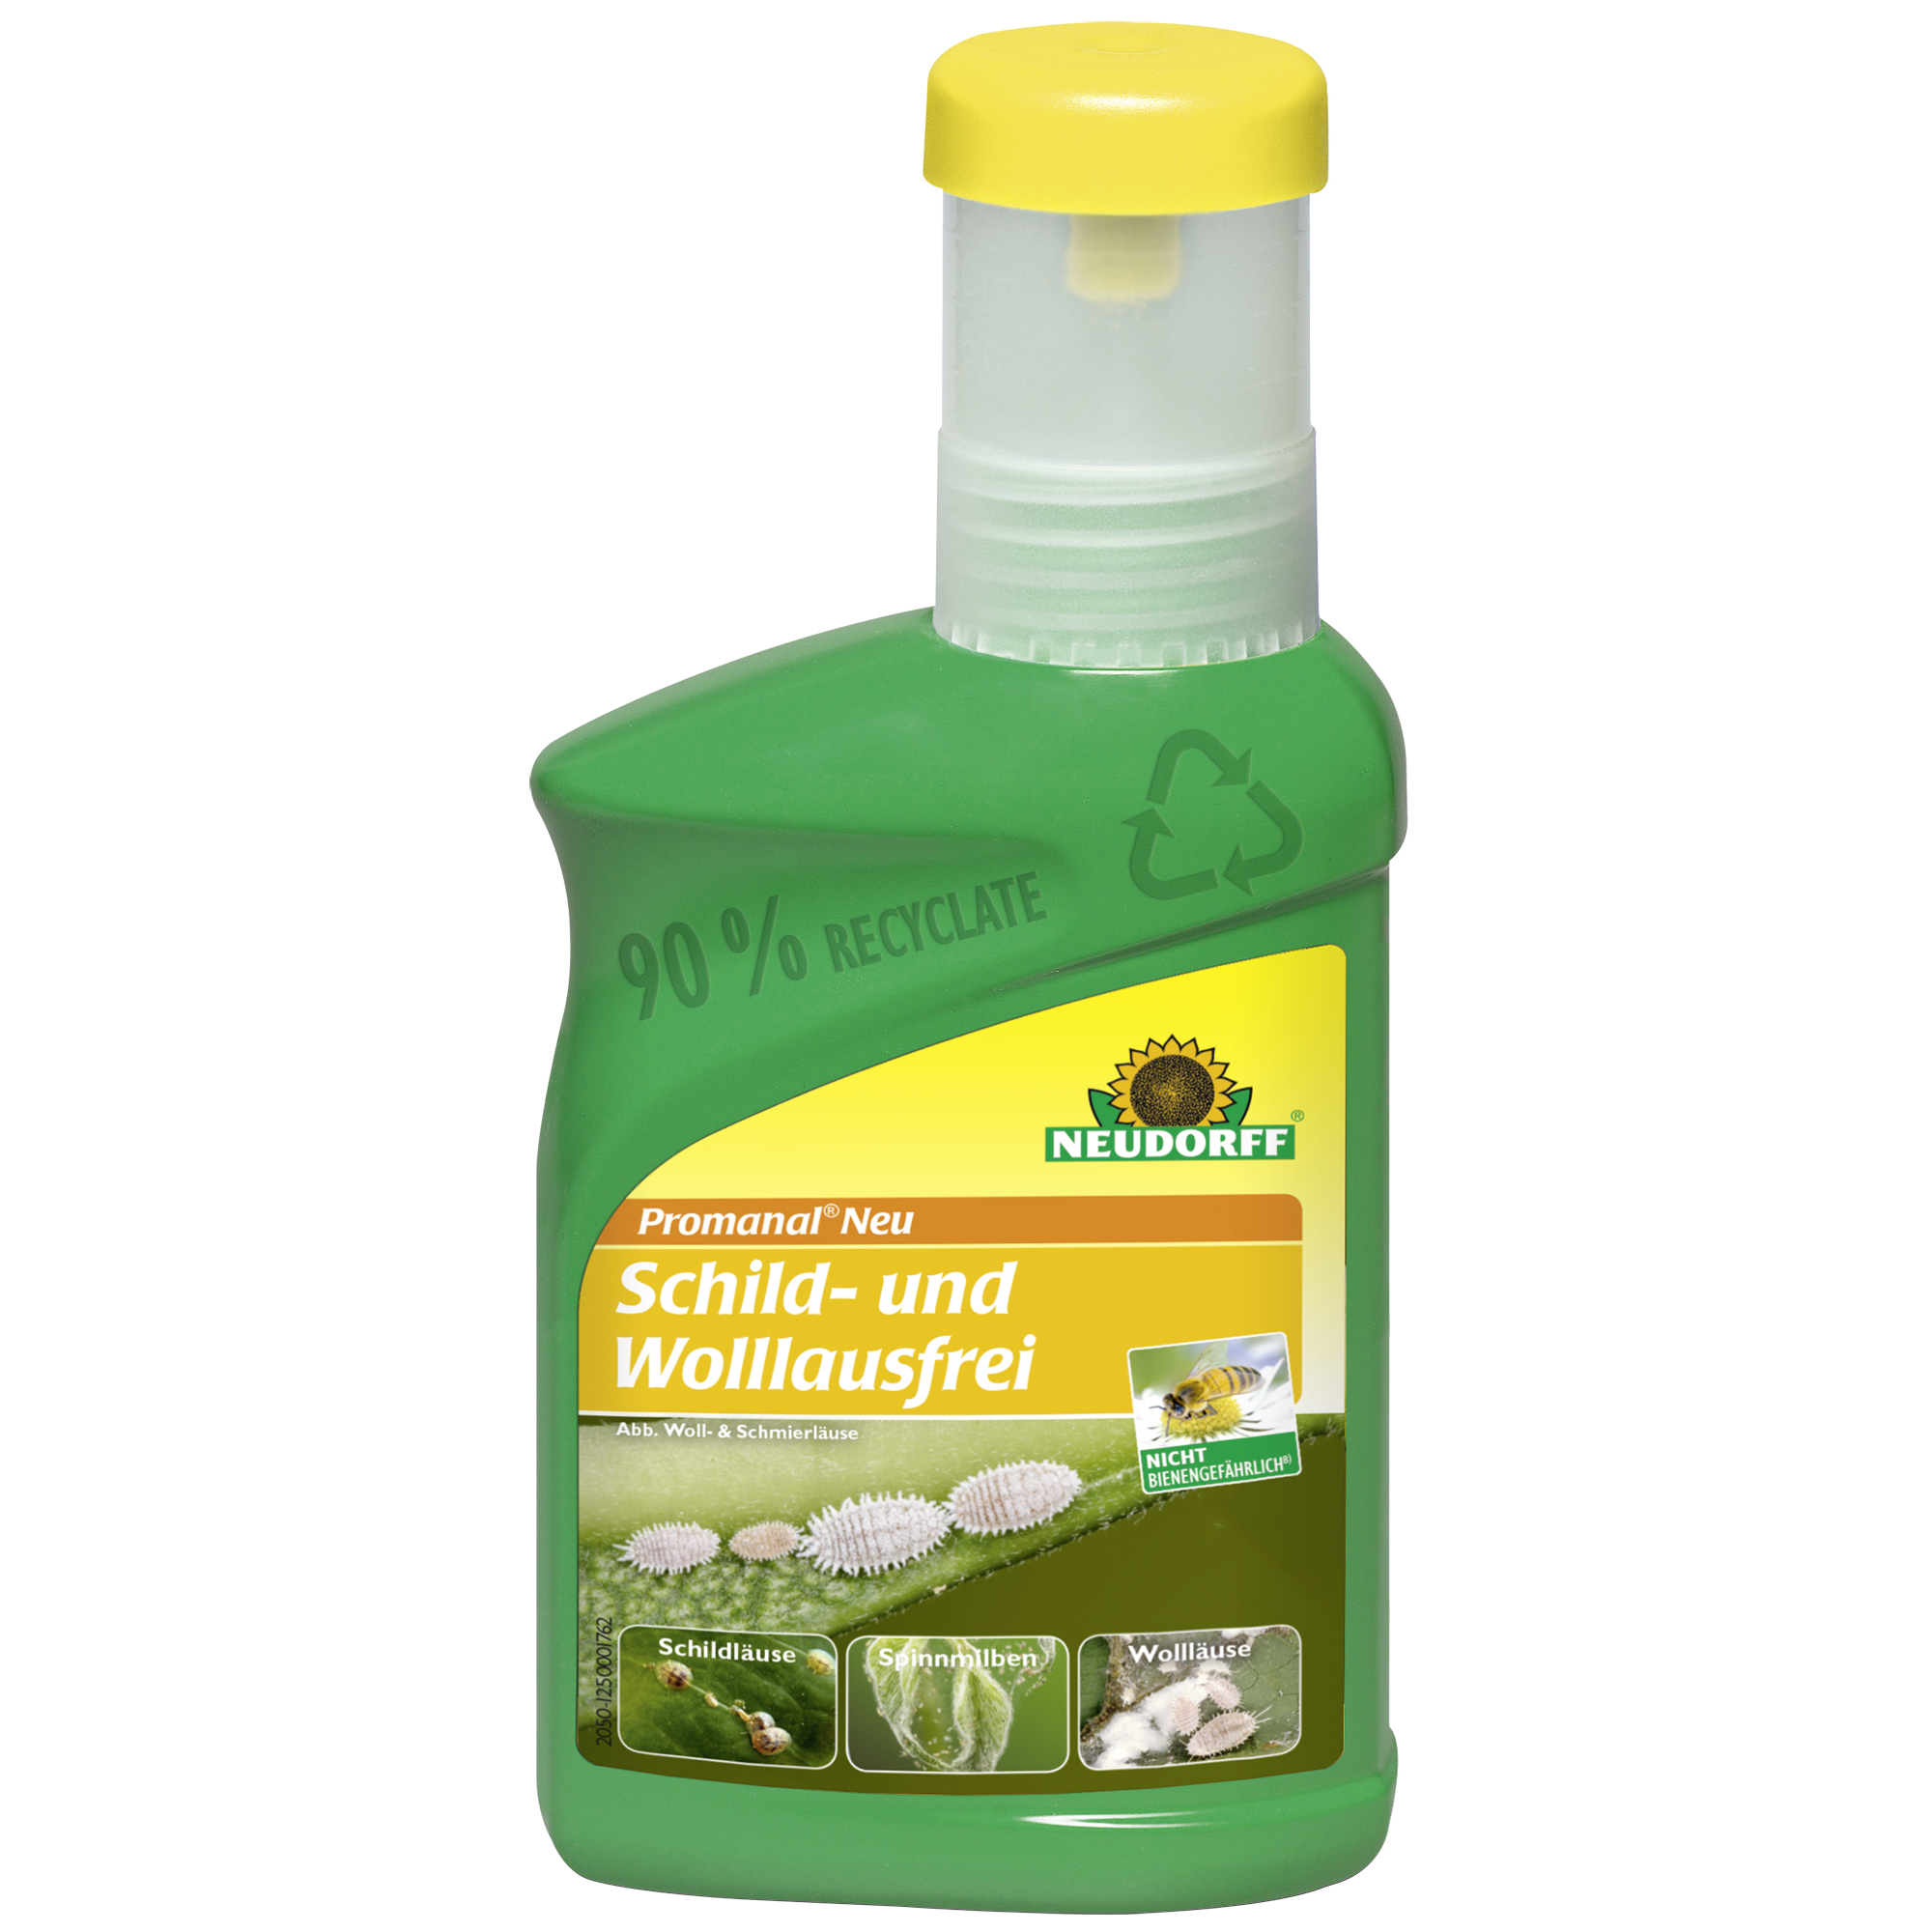 Pronamel Neu Schild- und Wolllausfrei 250 ml + product picture